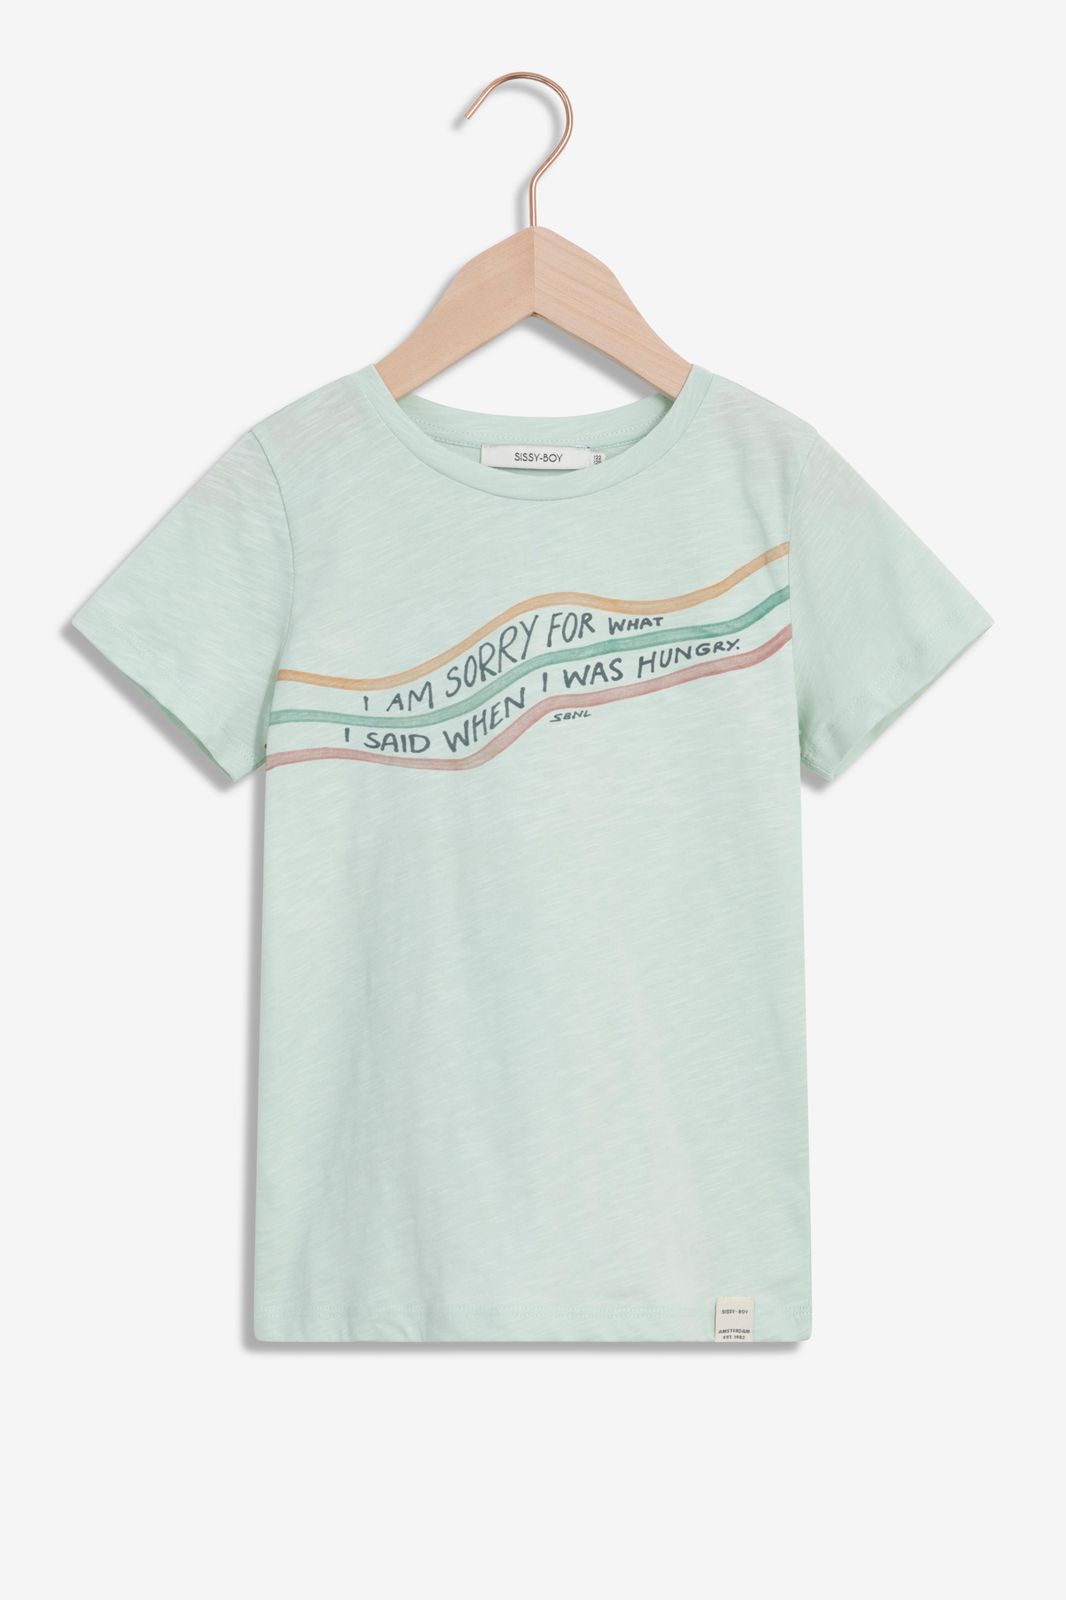 Lichtgroen T-shirt met tekst